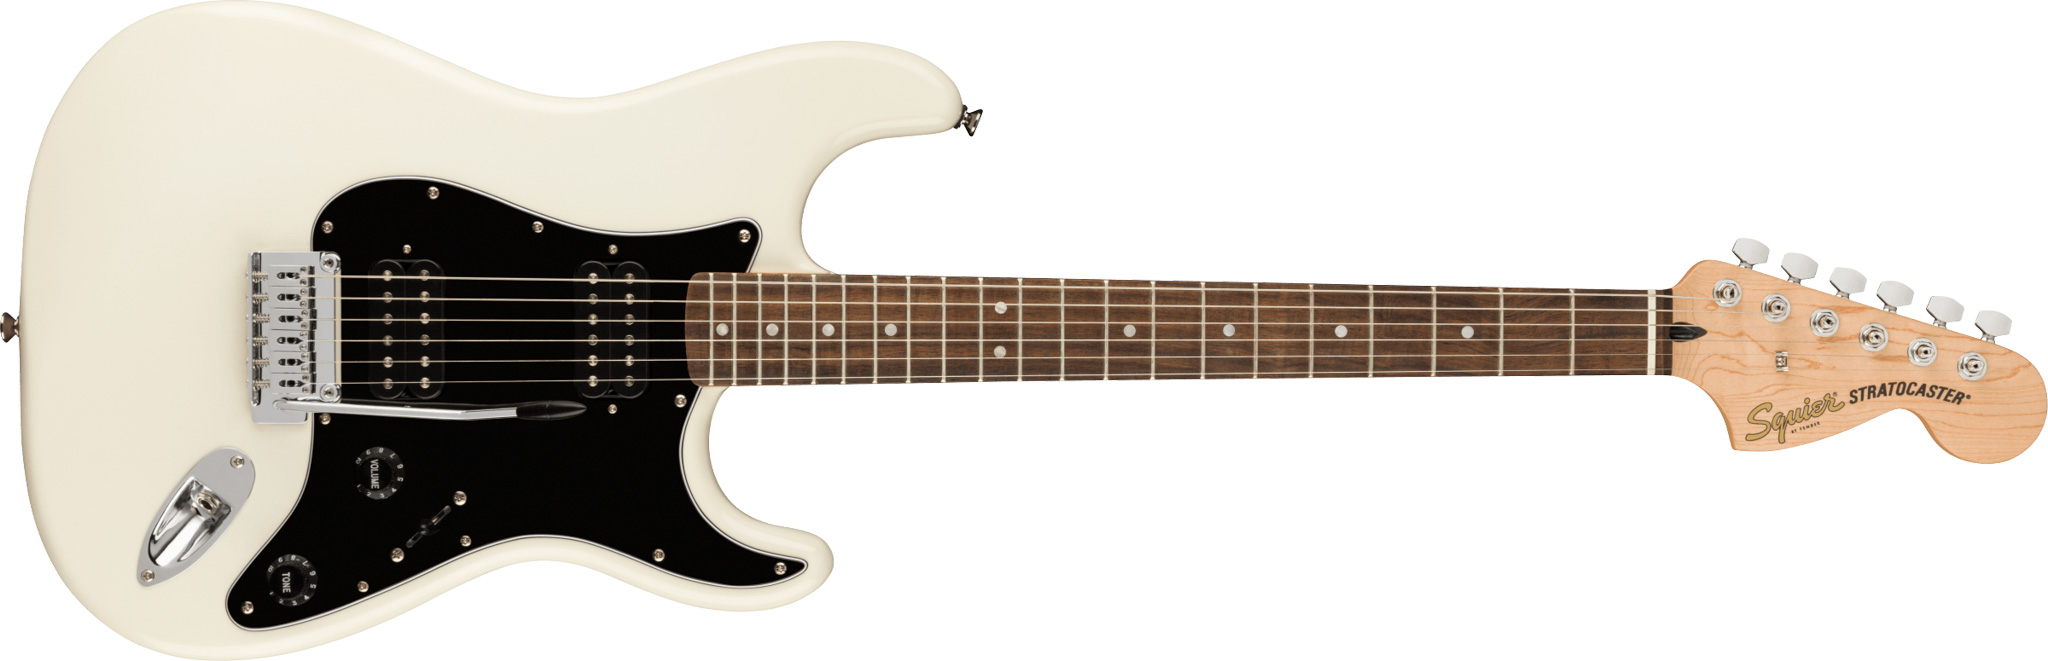 Fender Squier Affinity Stratocaster HH elektrisk gitar